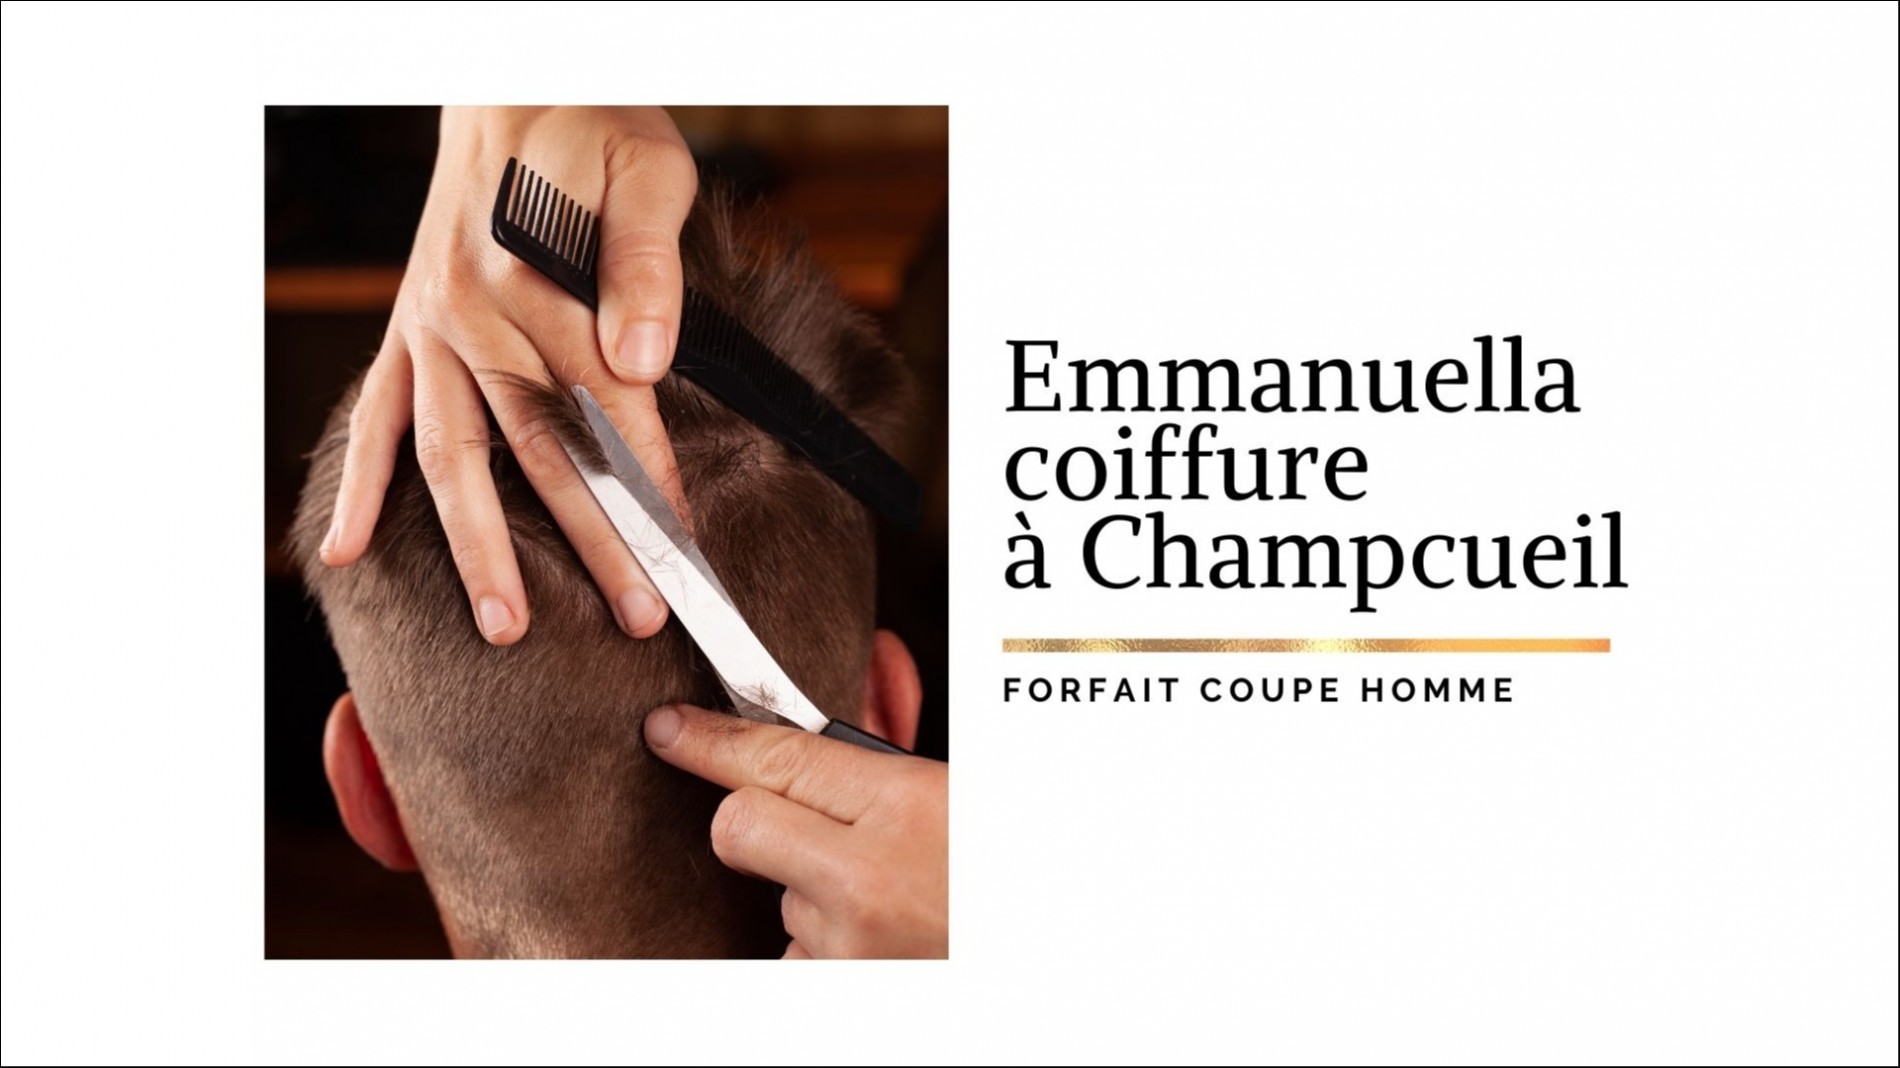 EMMANUELLA COIFFURE - Forfait coupe Homme